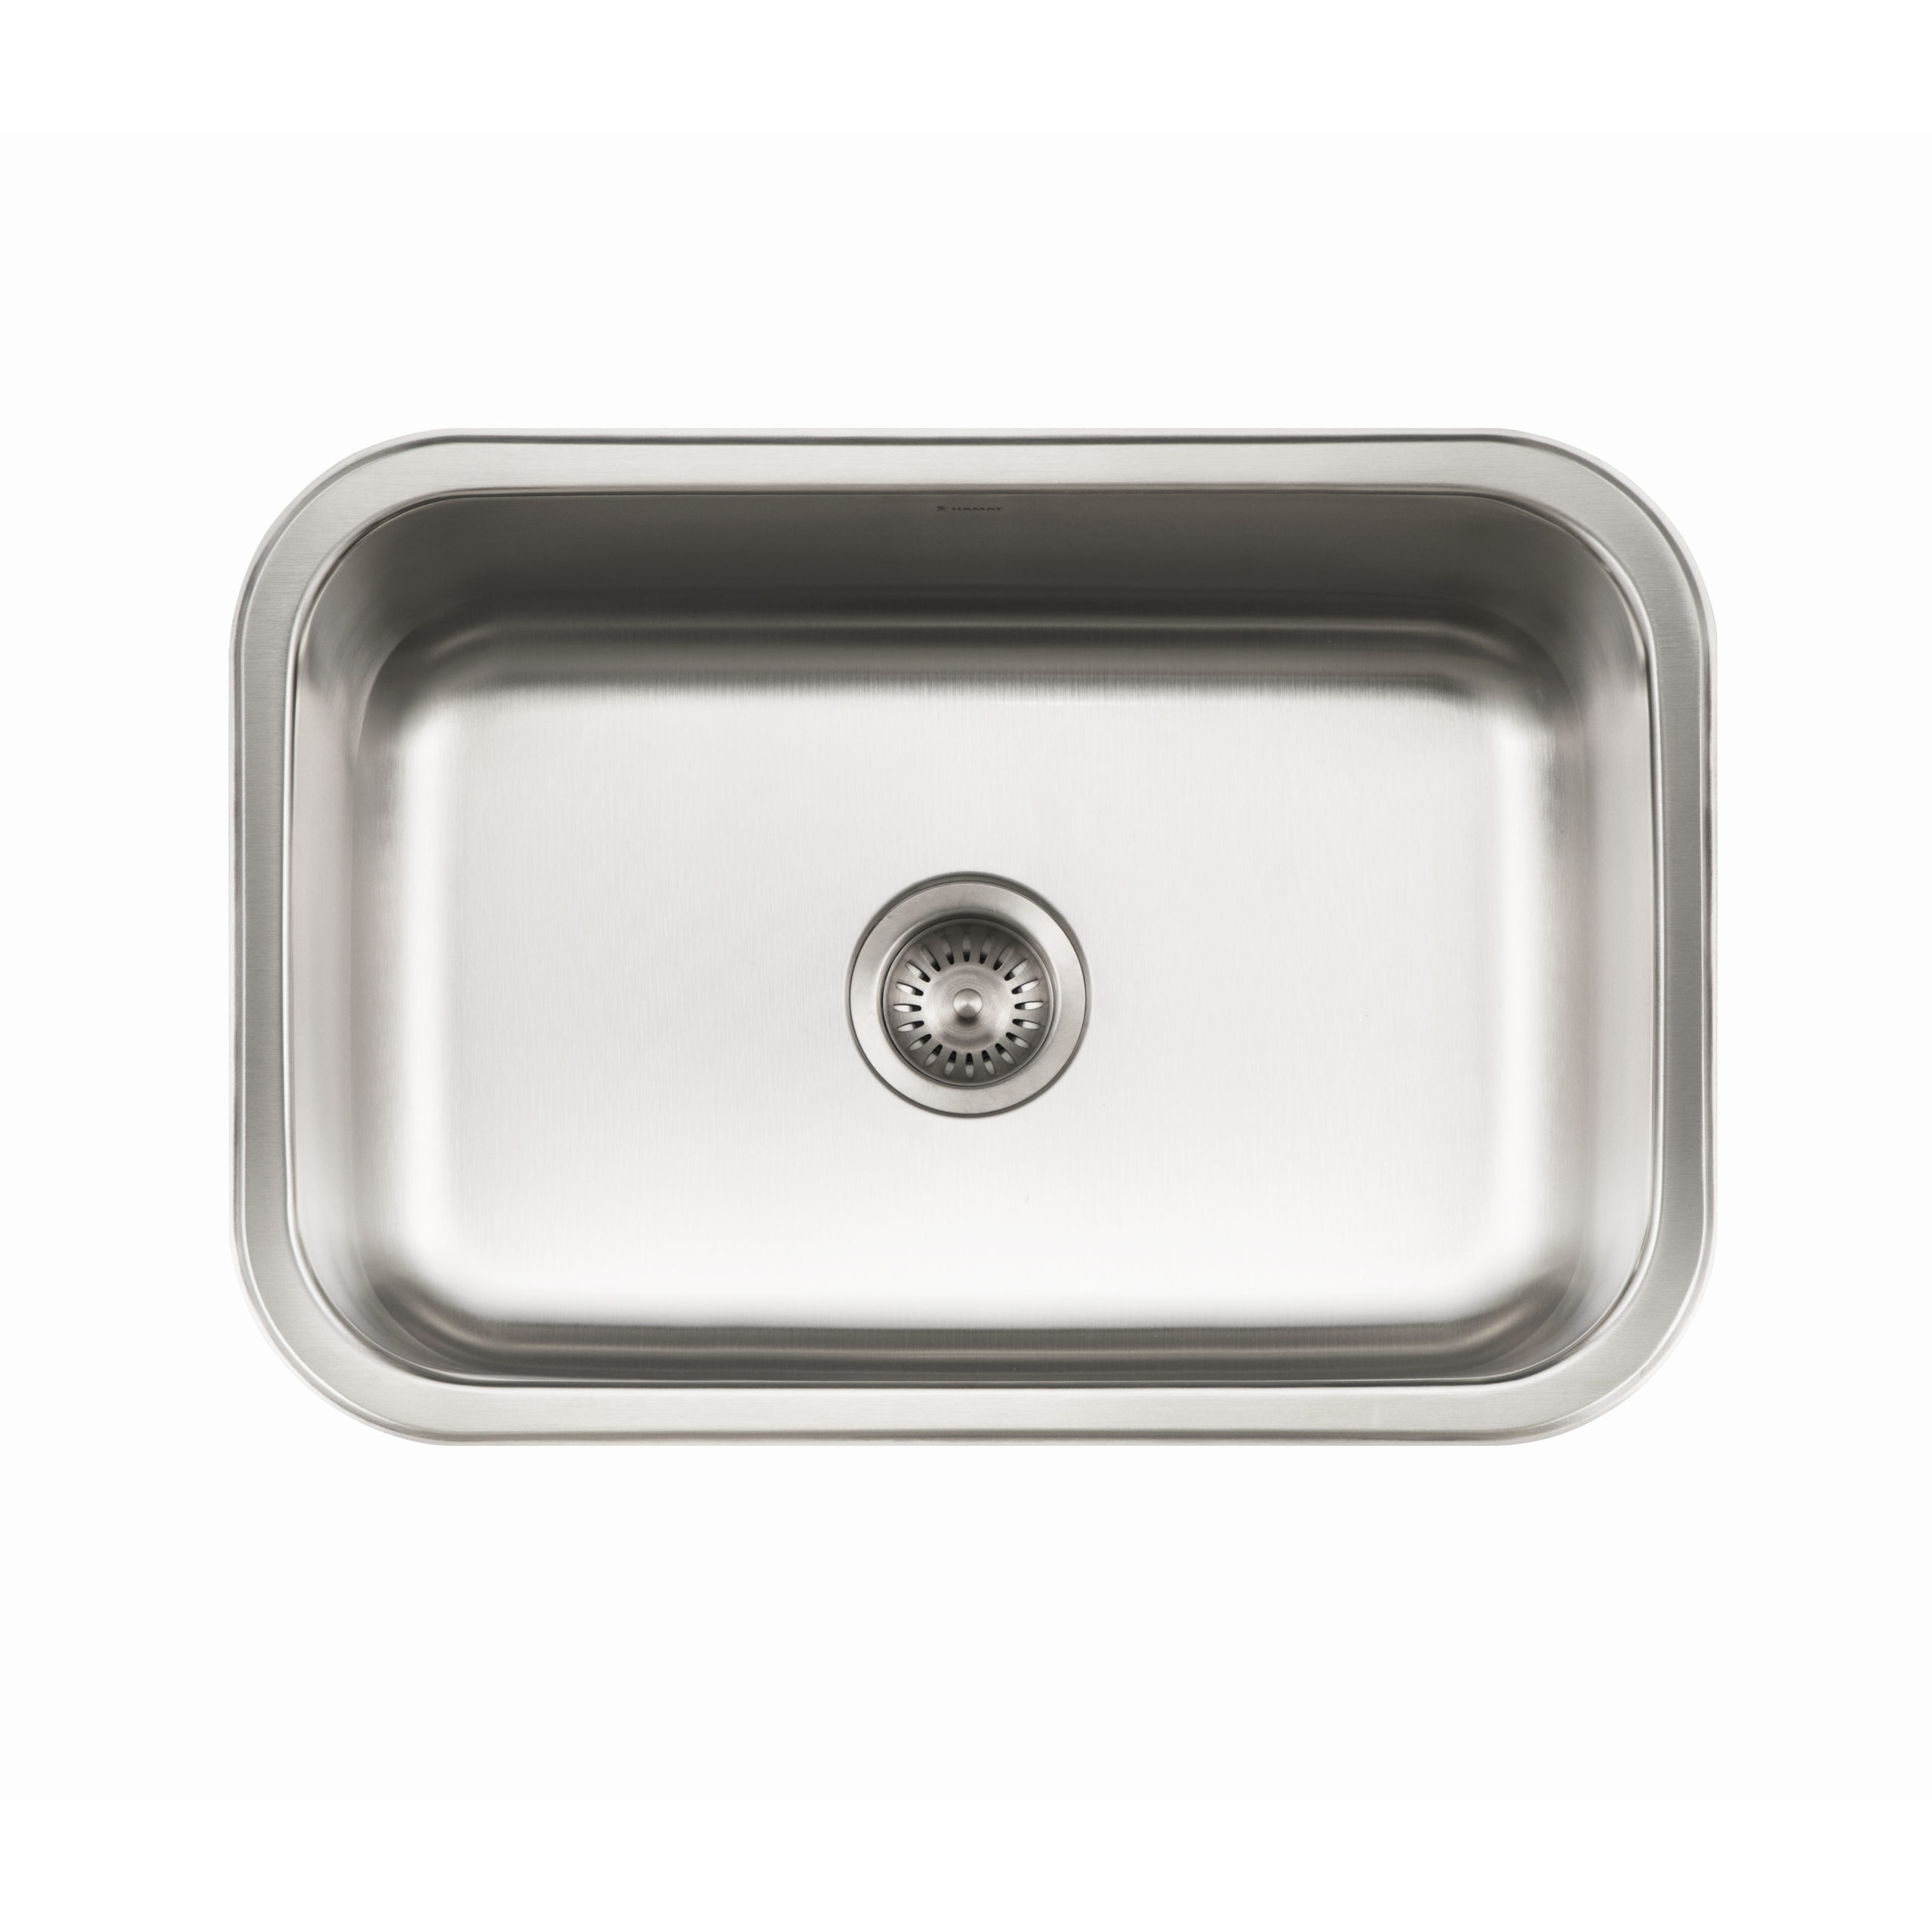 VATTUDALEN Single bowl top mount sink, stainless steel, 271/8x181